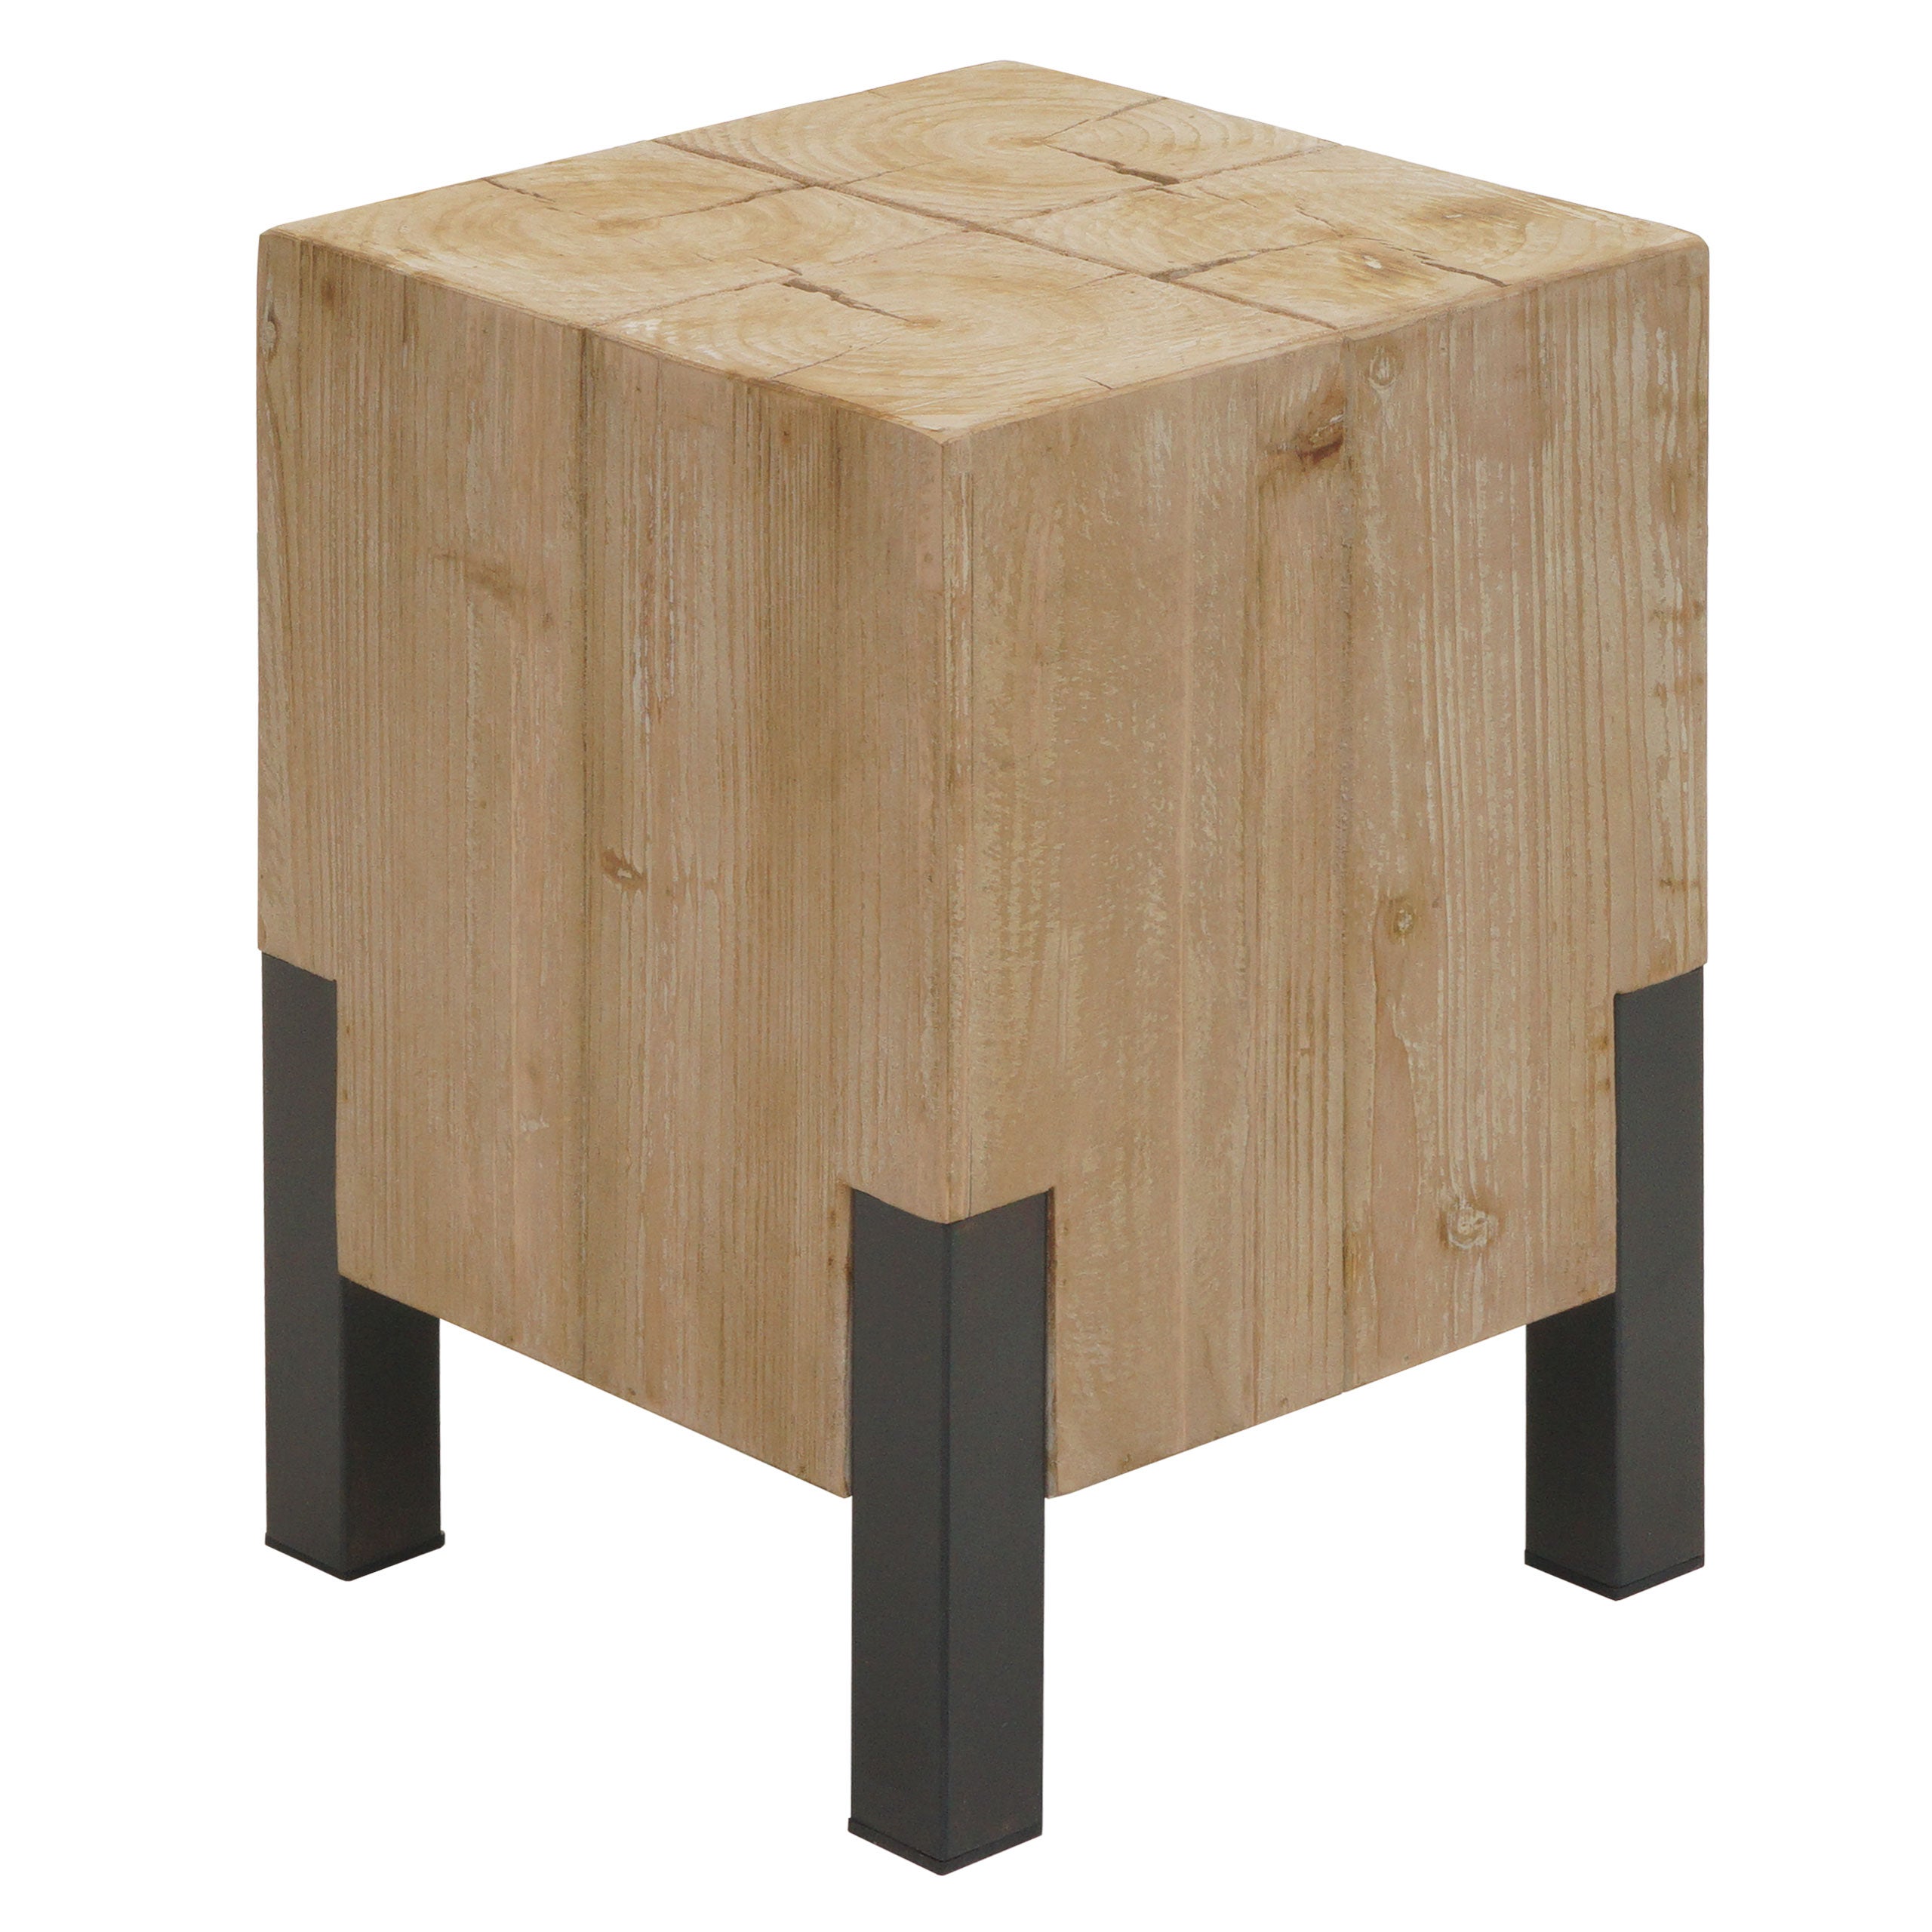 Sgabello basso moderno in legno di abete con struttura in ferro 32x32x45h cm